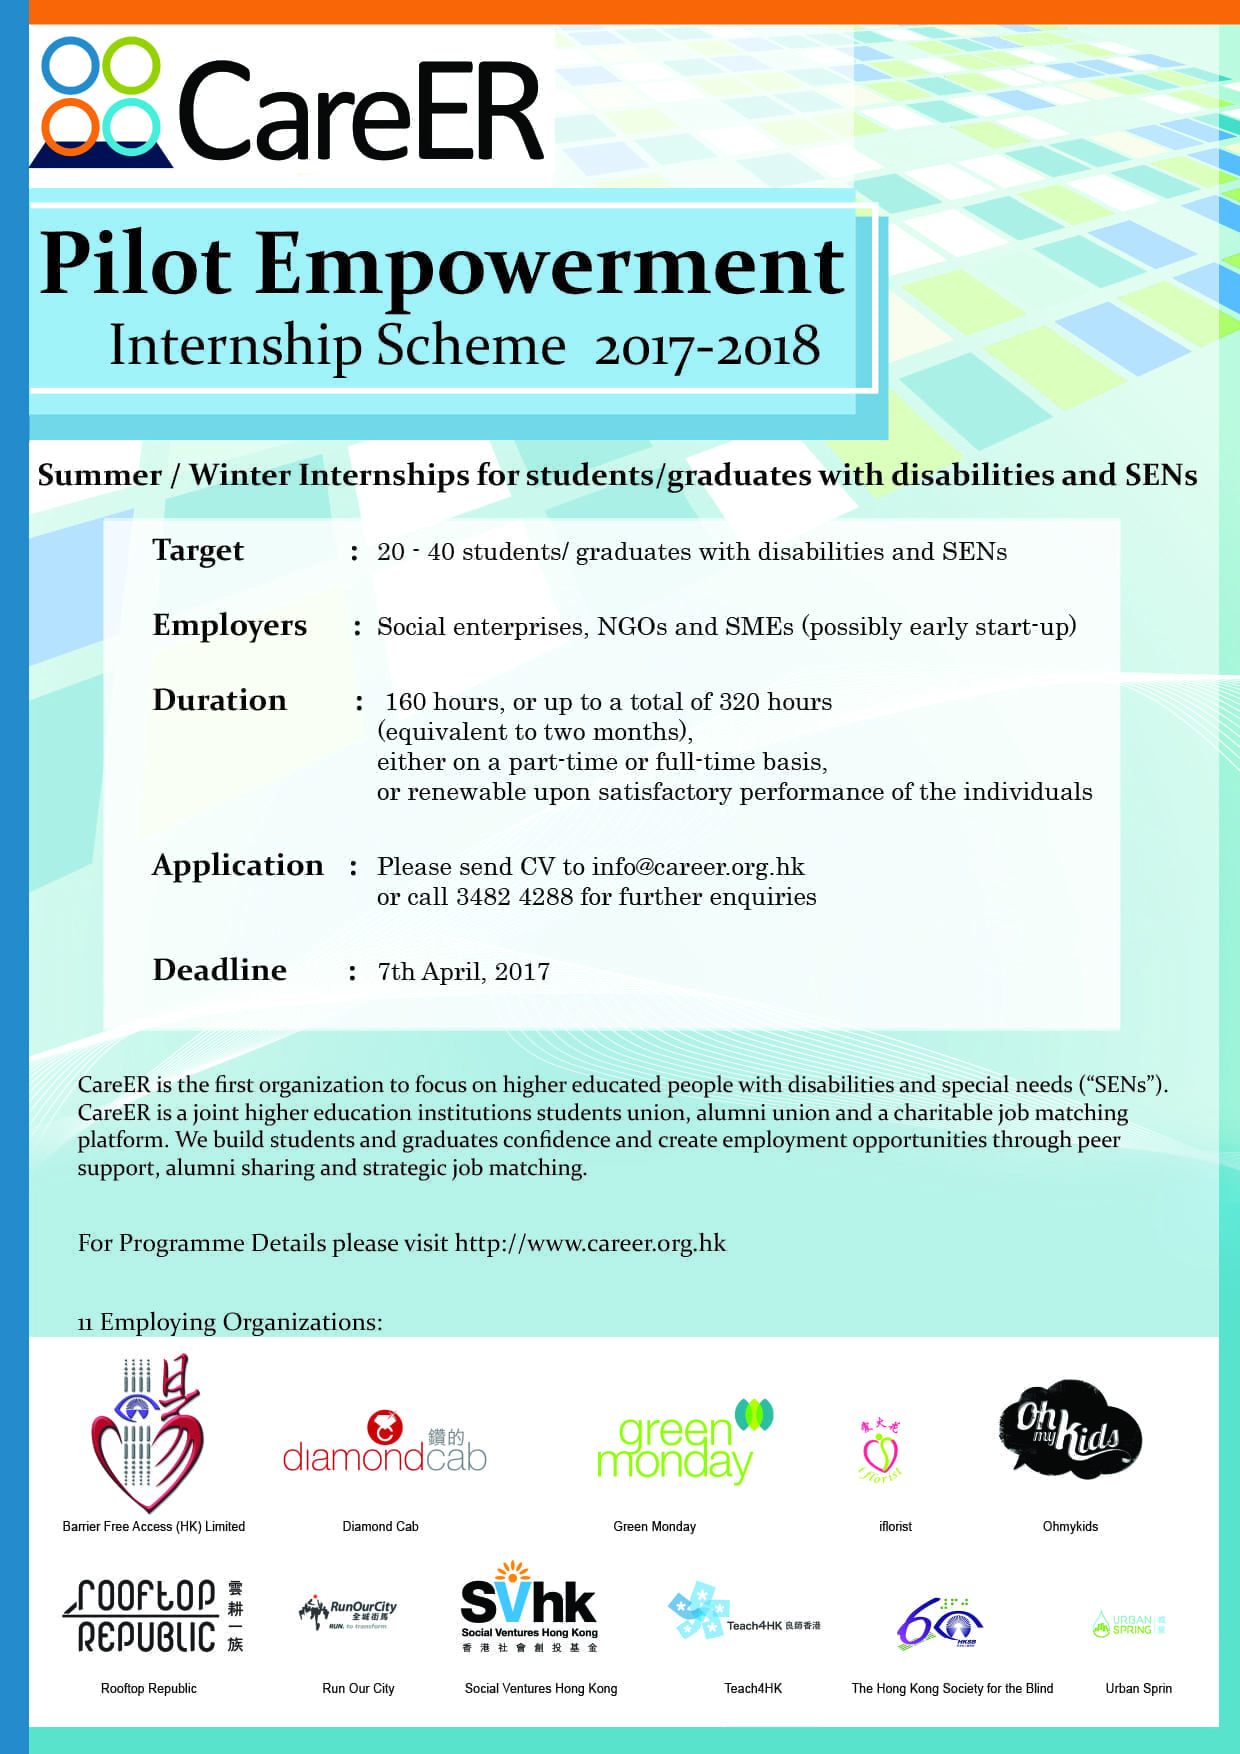 CareER Pilot Empowerment Internship Scheme 2017 – 2018